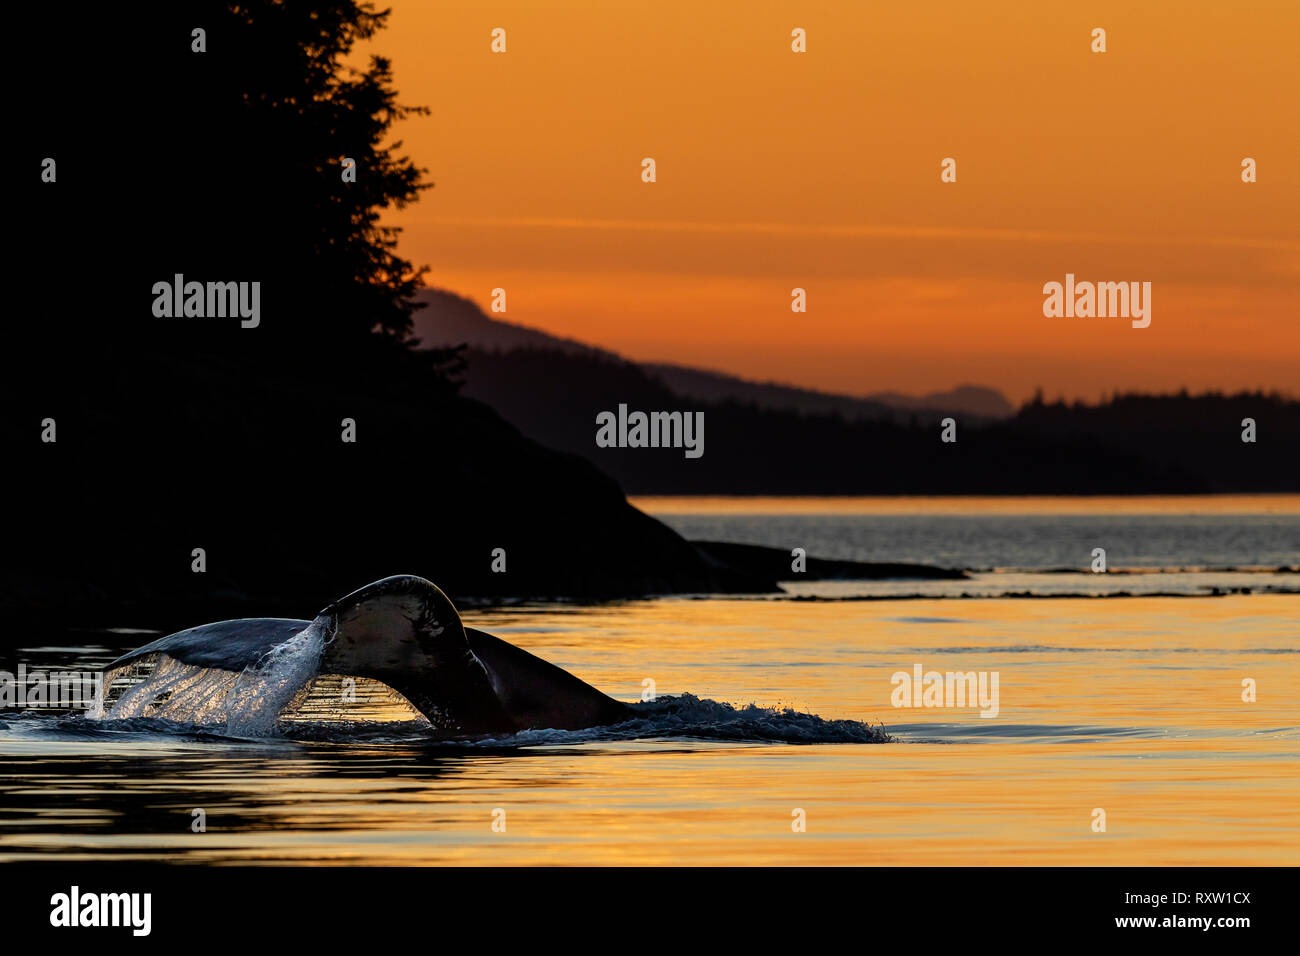 Ballena jorobada (Megaptera novaeangliae) levantando su cola para una inmersión profunda durante la puesta de sol en el paso de Weynton de la isla de Vancouver cerca del archipiélago de Broughton, Territorio de las primeras Naciones, Columbia Británica, Canadá. Foto de stock